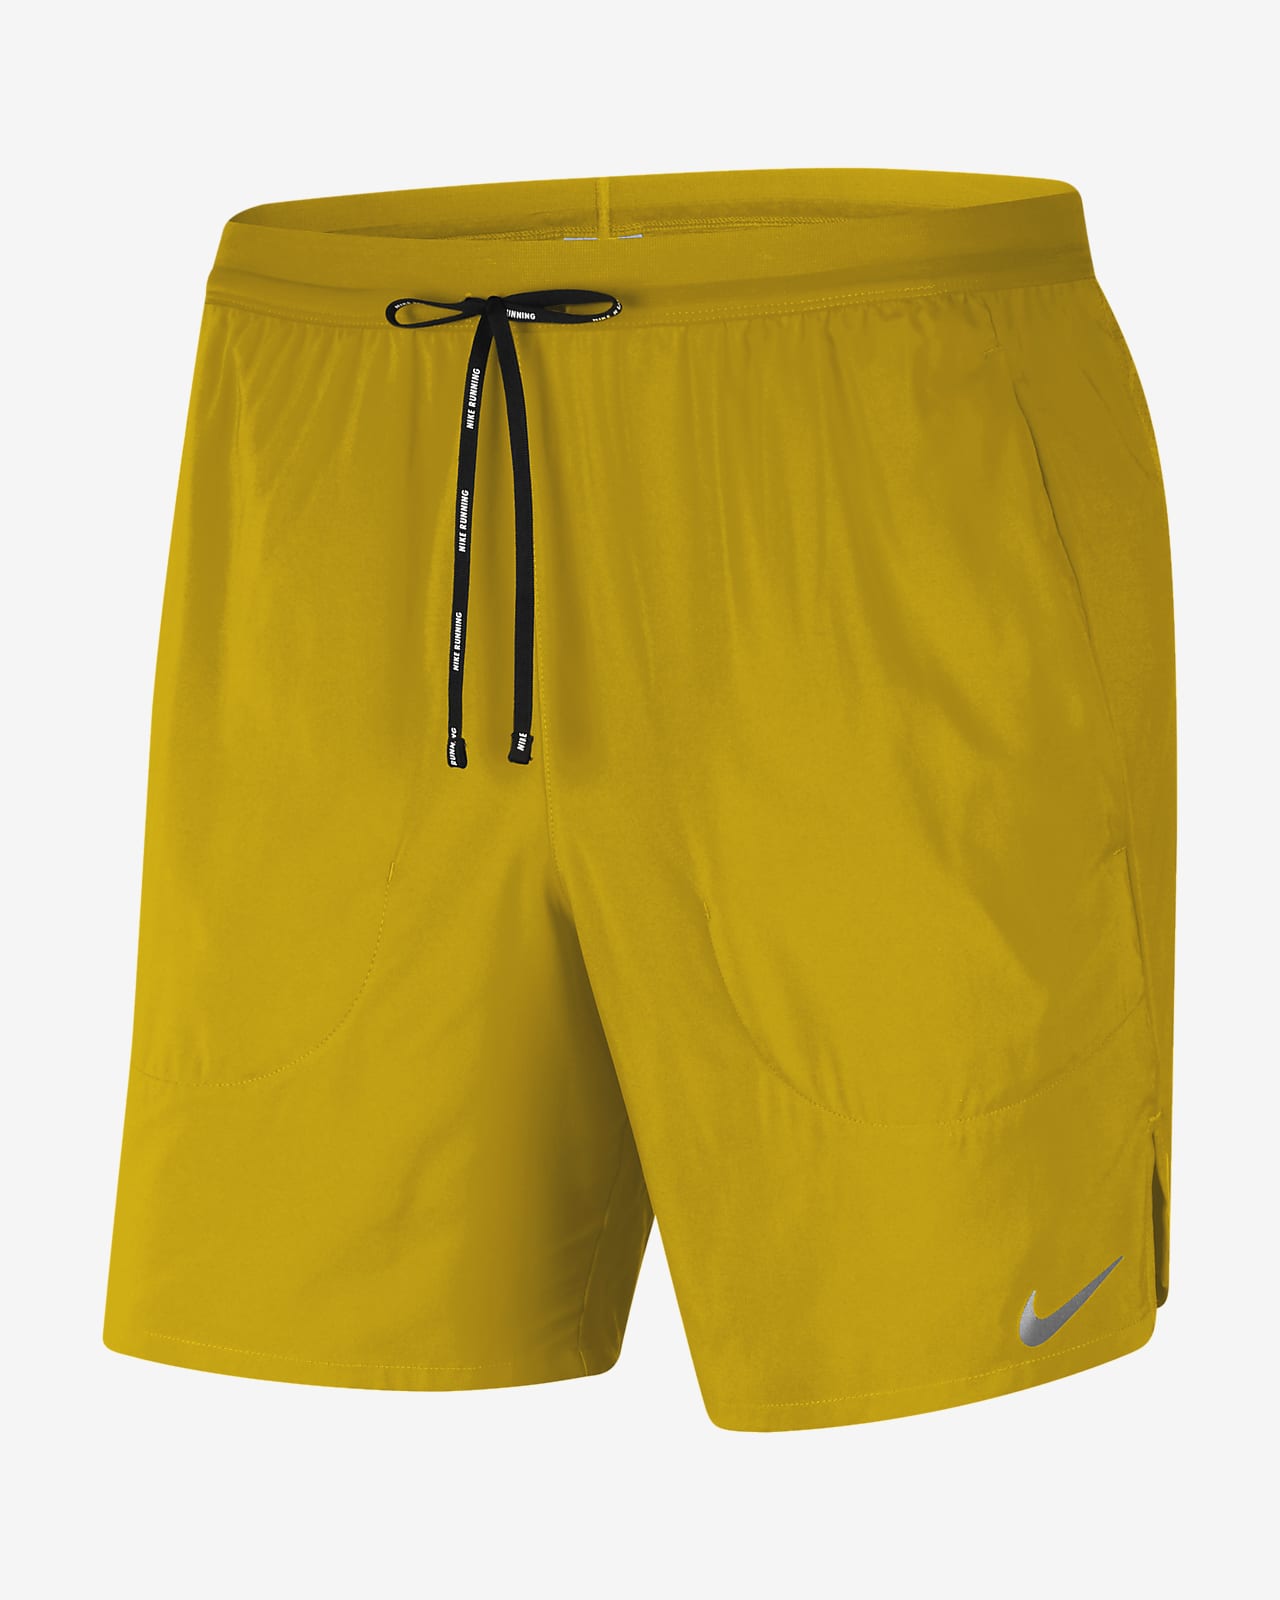 yellow runner shorts